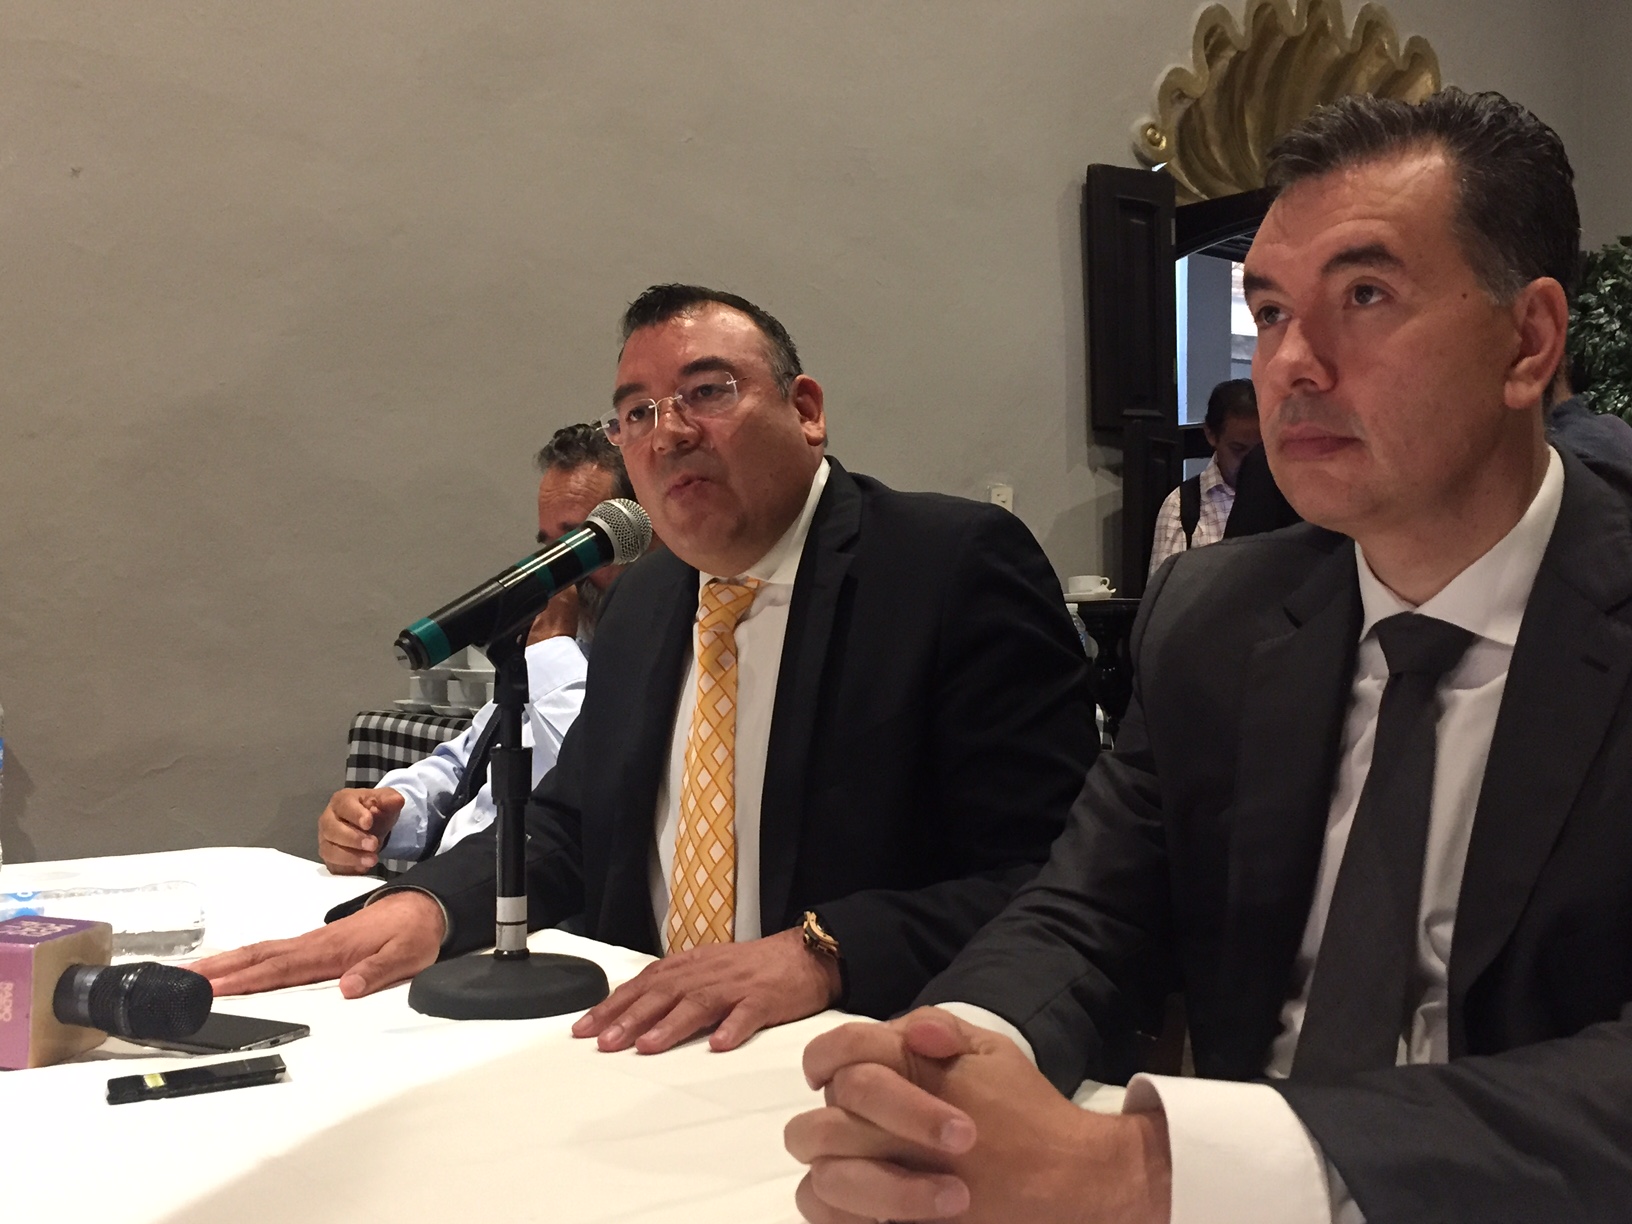  Dirigente estatal del PRD busca dialogar con Pancho Domínguez sobre Frente Amplio Democrático